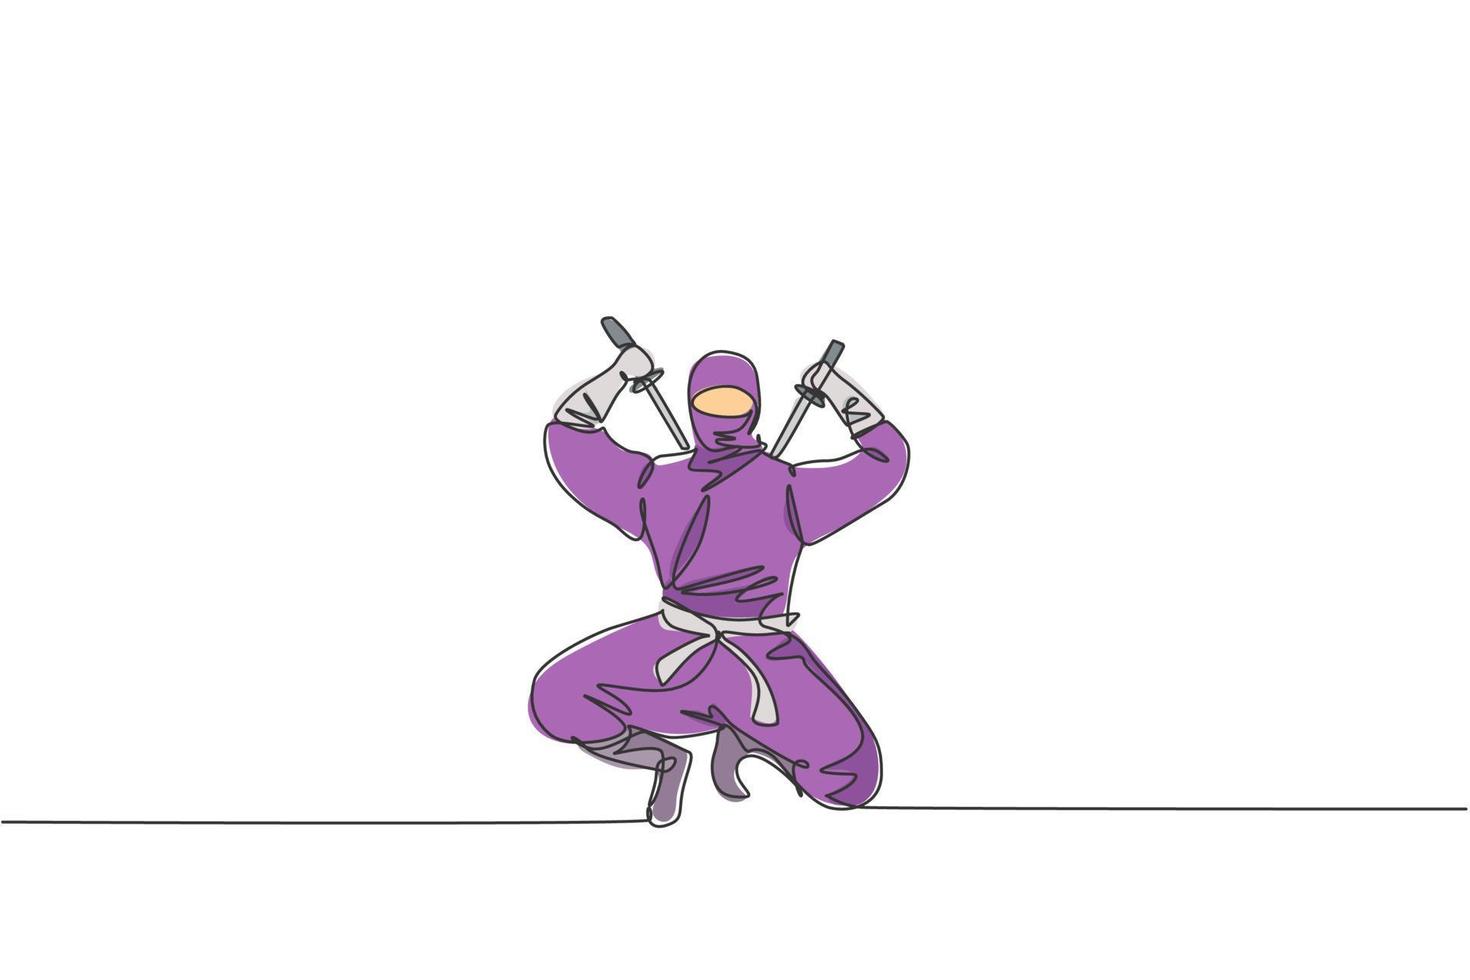 disegno a linea continua singola del giovane guerriero ninja della cultura giapponese su costume maschera con posa di attacco. concetto di samurai di combattimento di arte marziale. illustrazione vettoriale di disegno di una linea alla moda